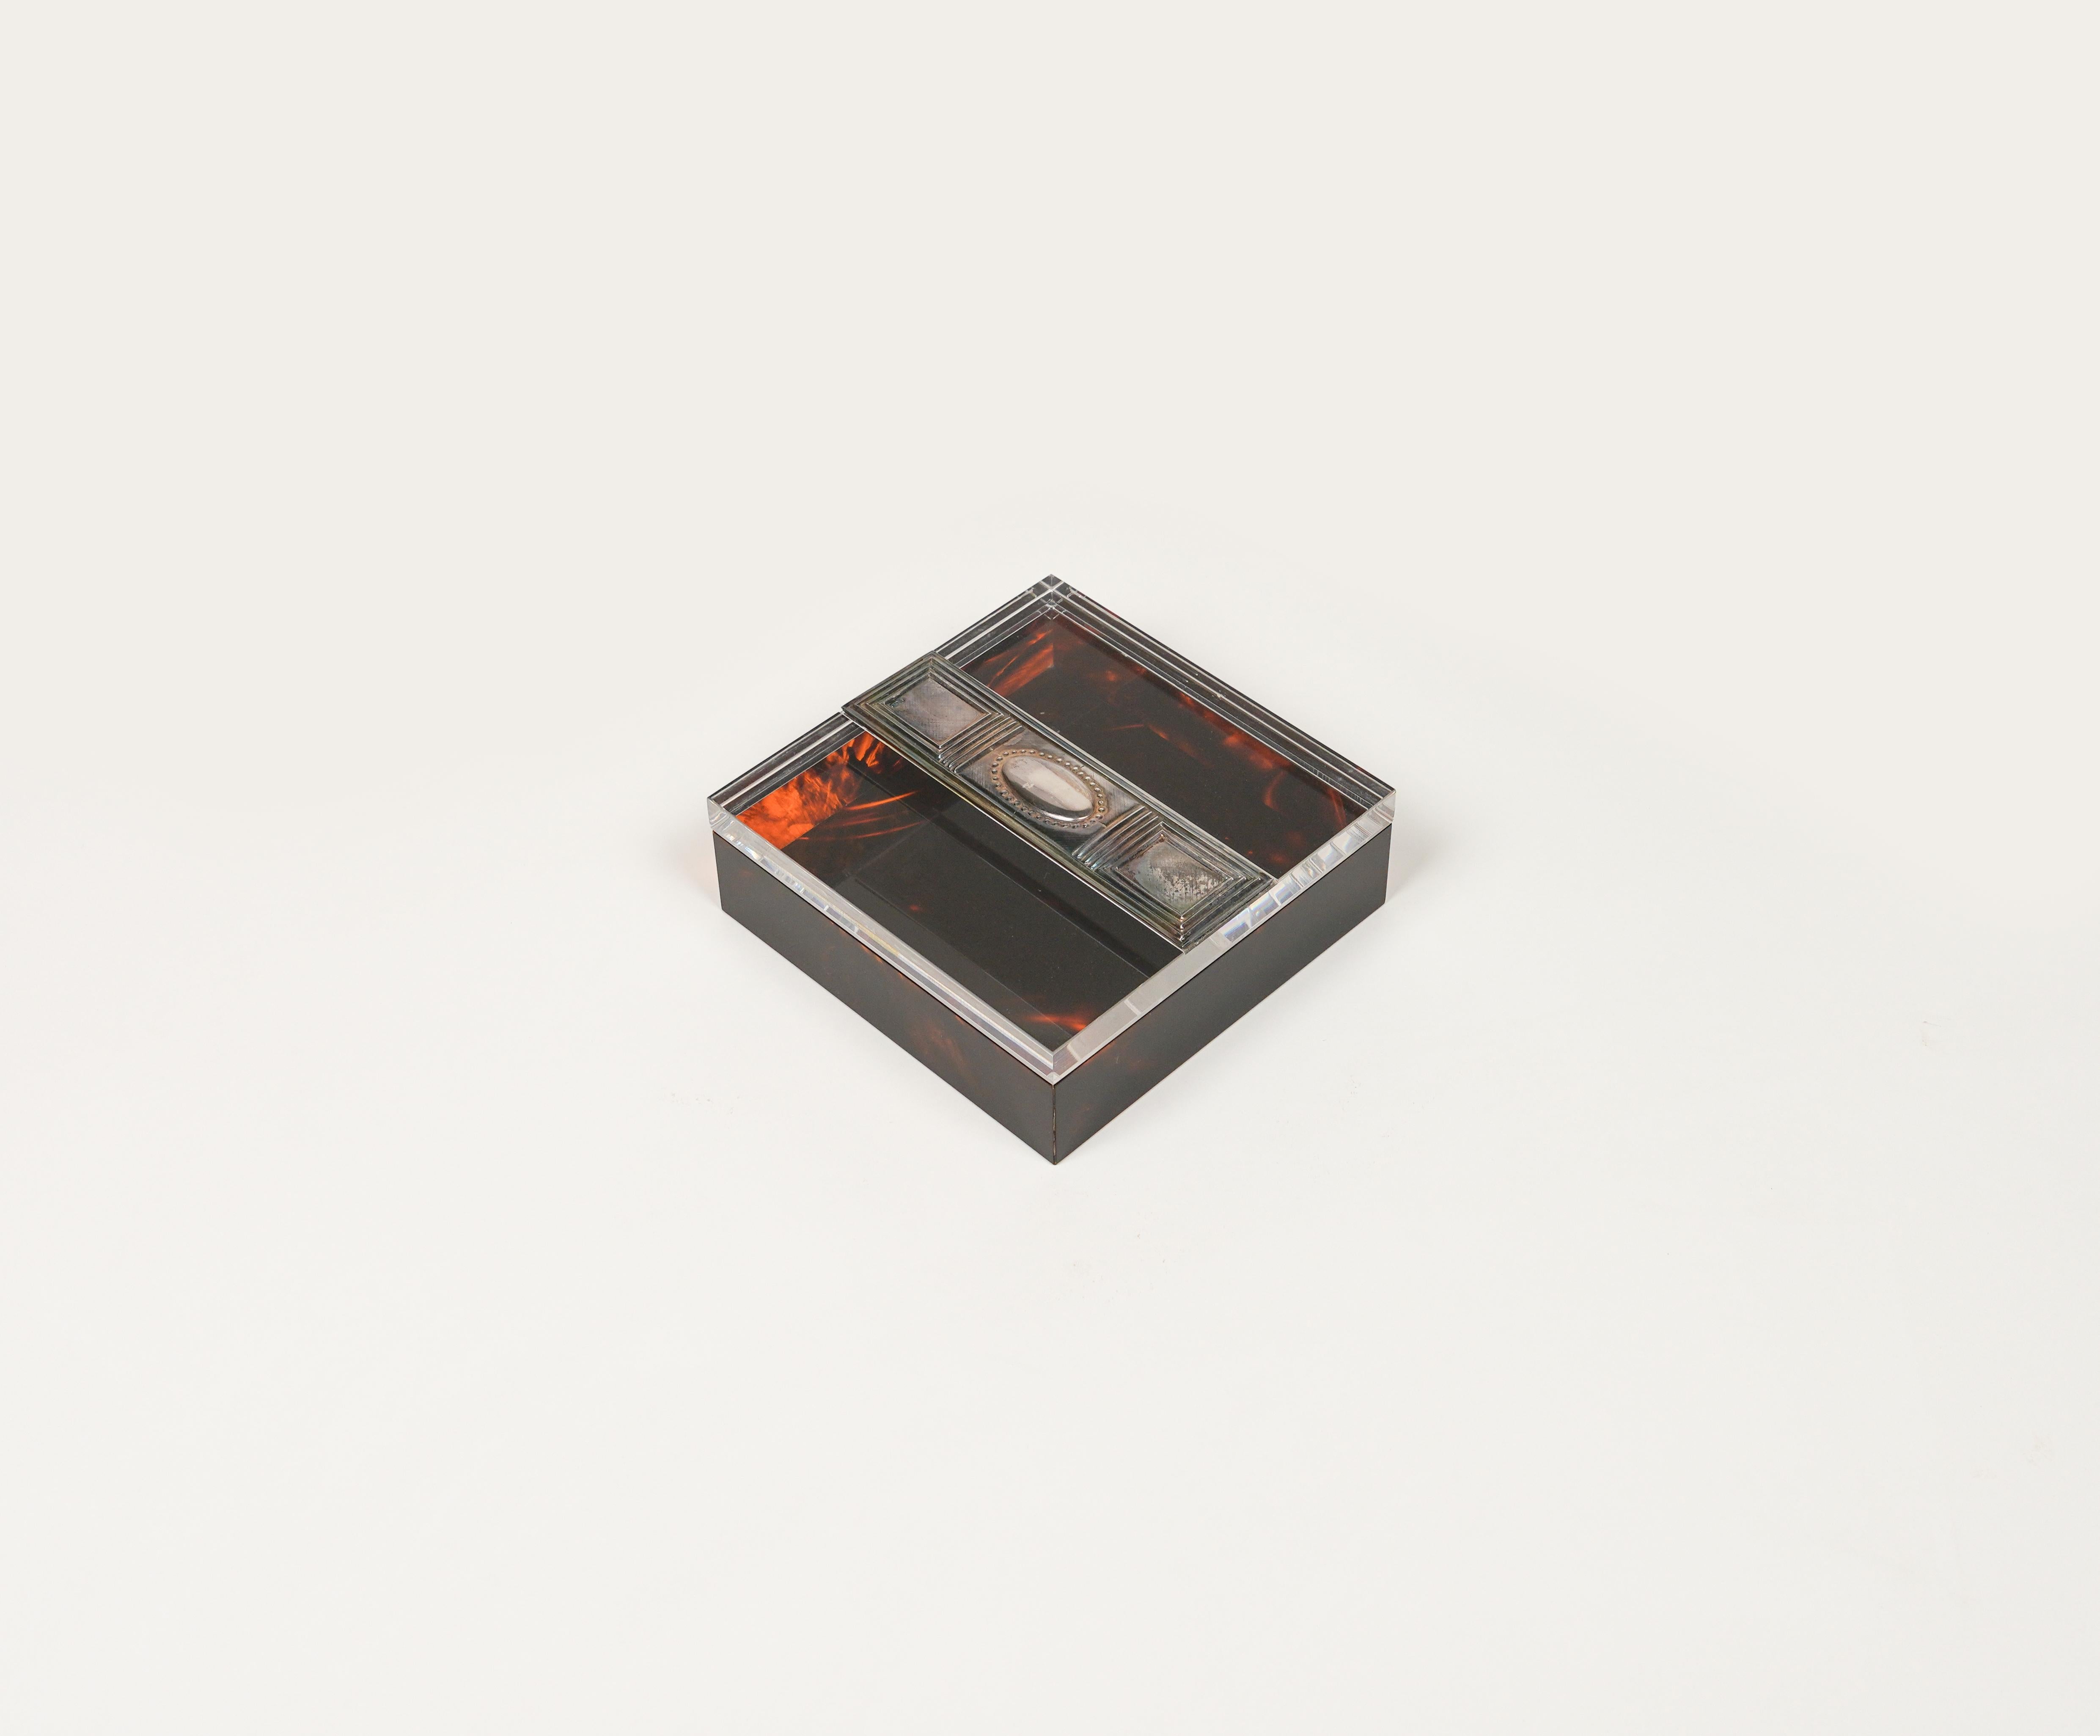 Quadratische dekorative Schmuckschatulle aus schildpattfarbenem Lucit und Silber im Stil von Christian Dior.

Hergestellt in Italien in den 1980er Jahren.

Perfektes Schreibtischobjekt oder Geschenkidee.